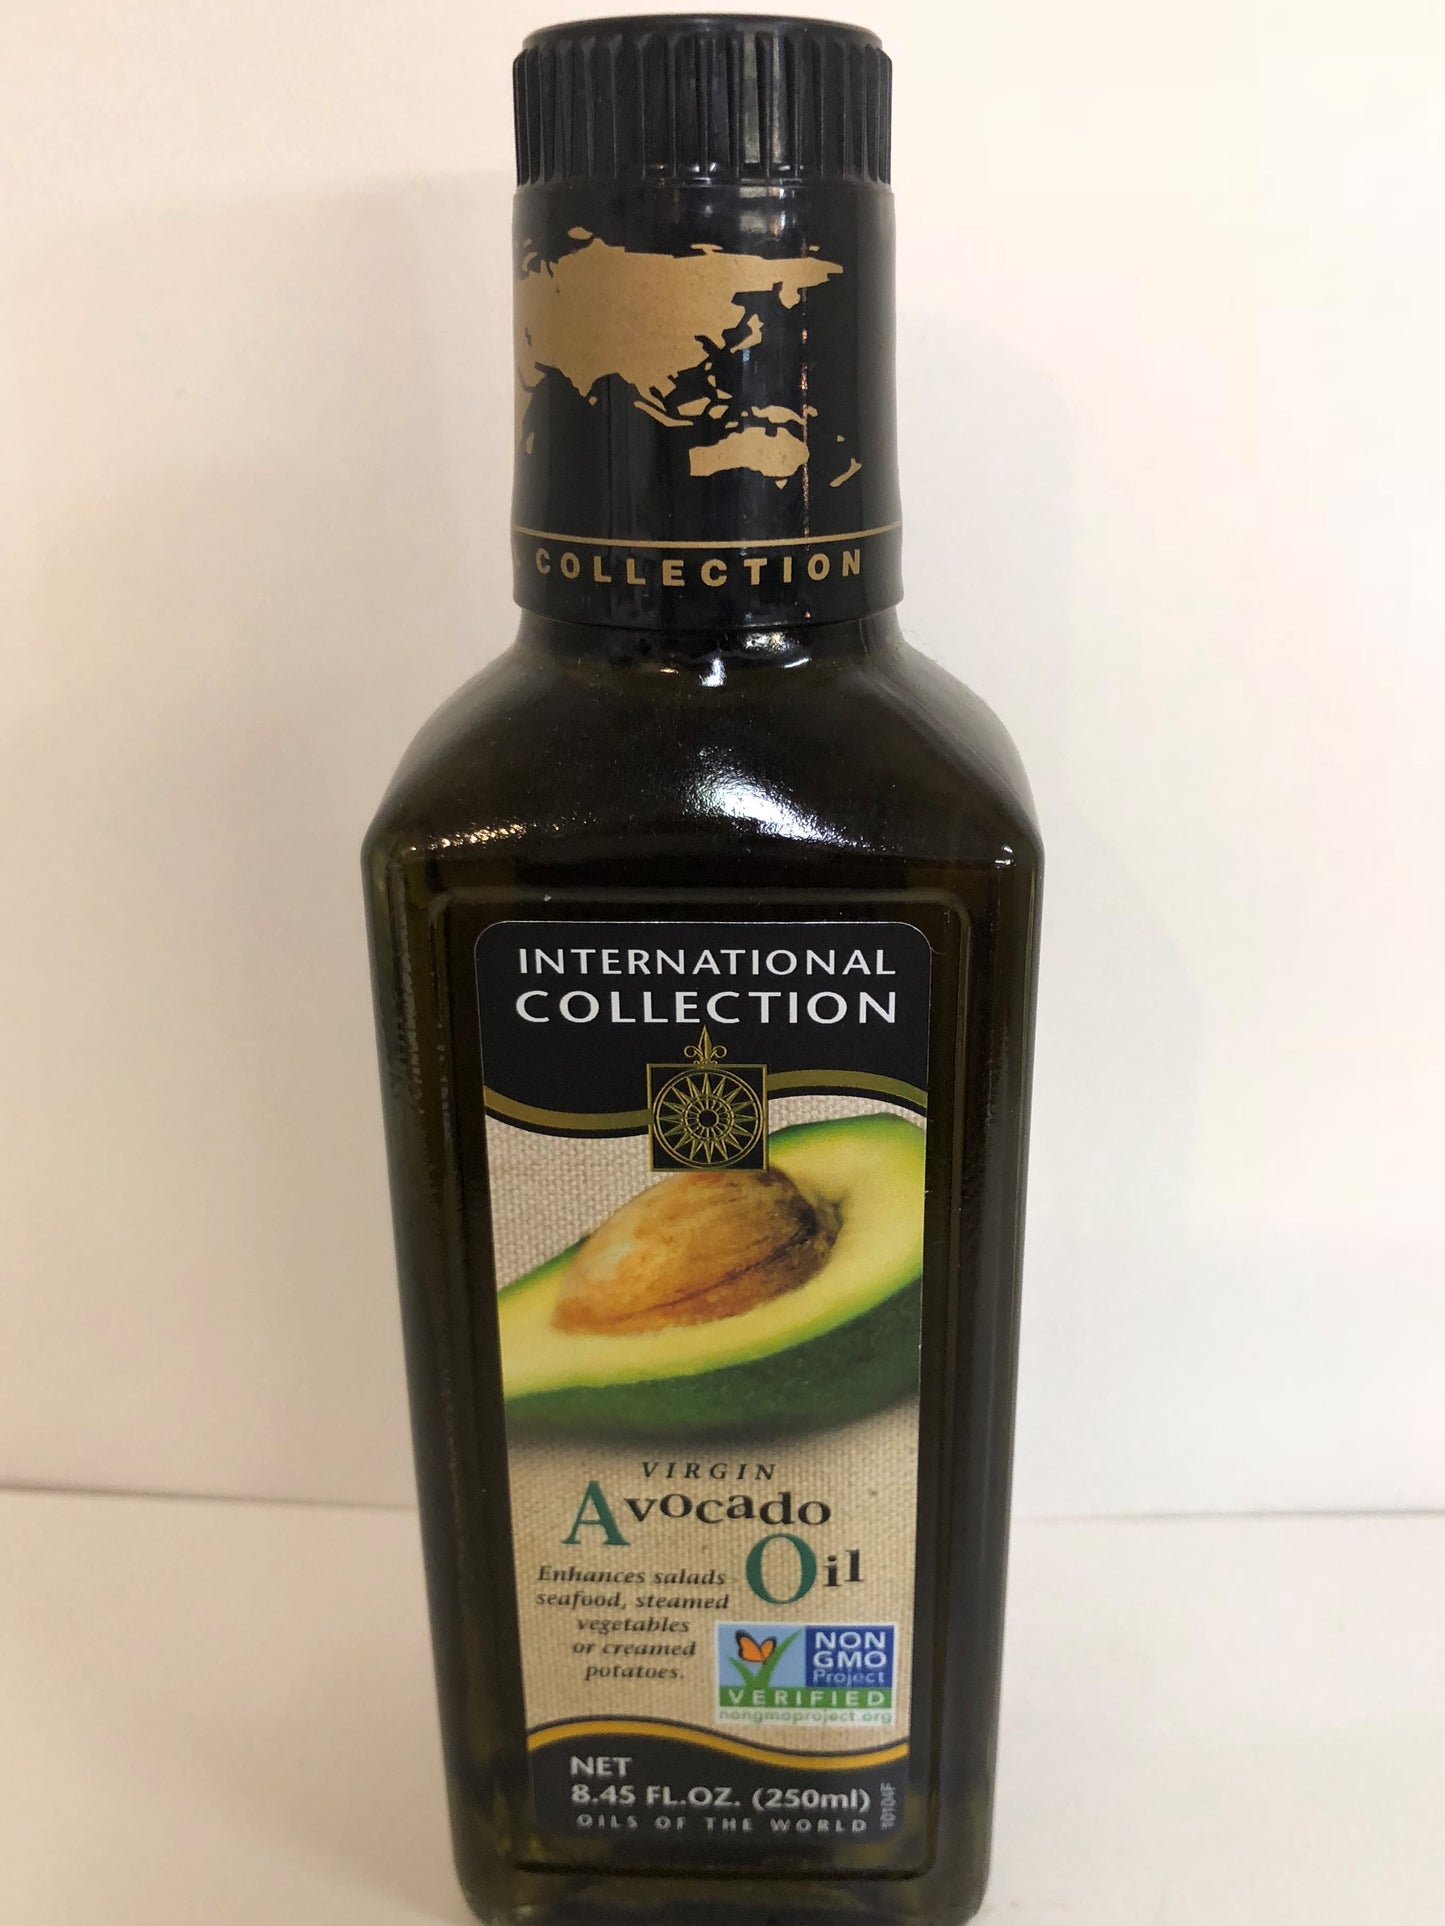 International Collection Virgin Avocado Oil